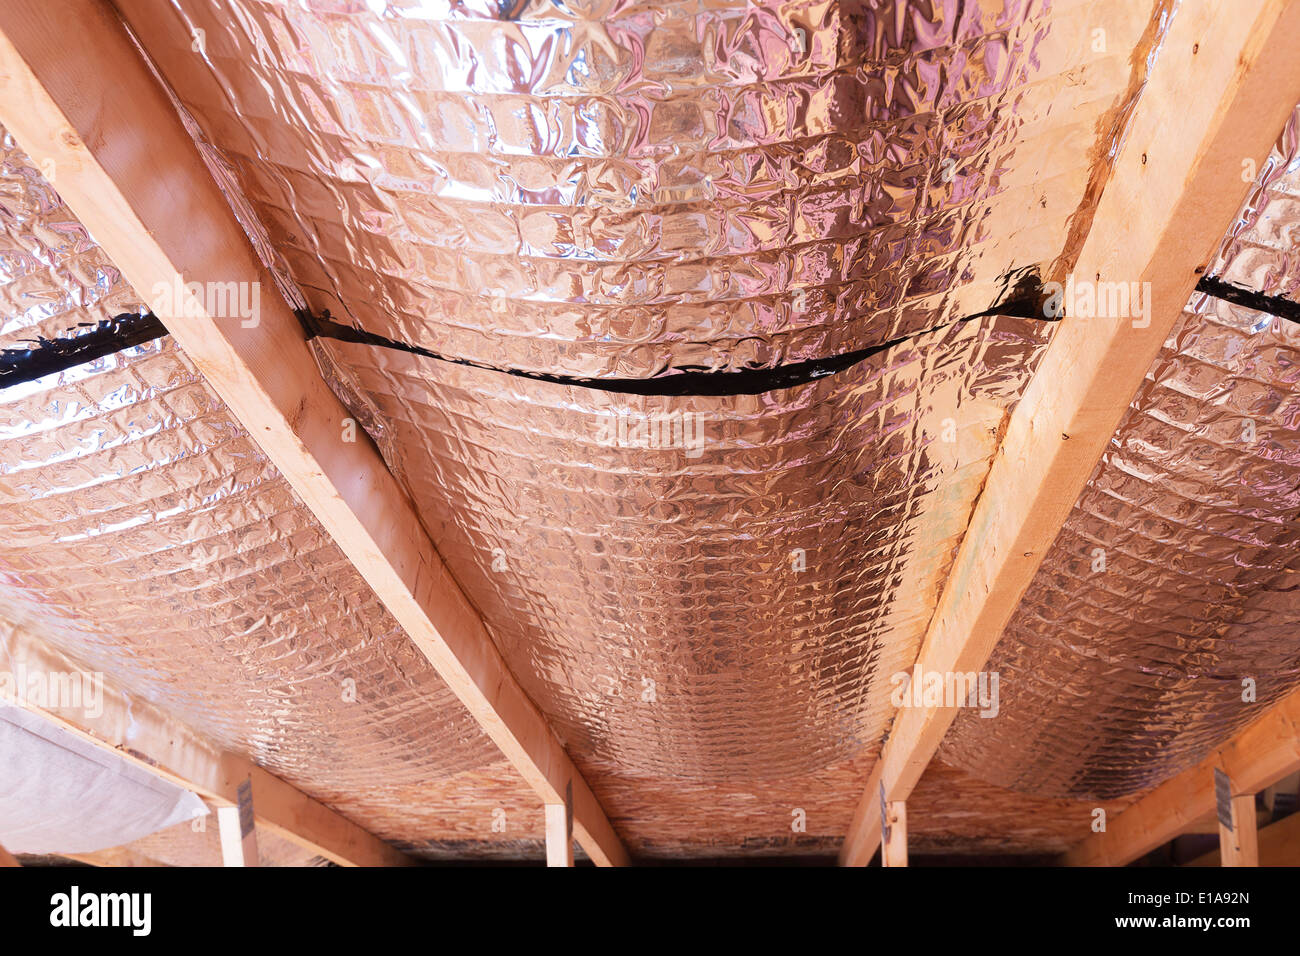 Isolierung des Dachbodens mit Fiberglas kalt Barriere und reflektierende Hitze Barriere als Trennwand zwischen den Dachboden Balken zu erhöhen Stockfoto